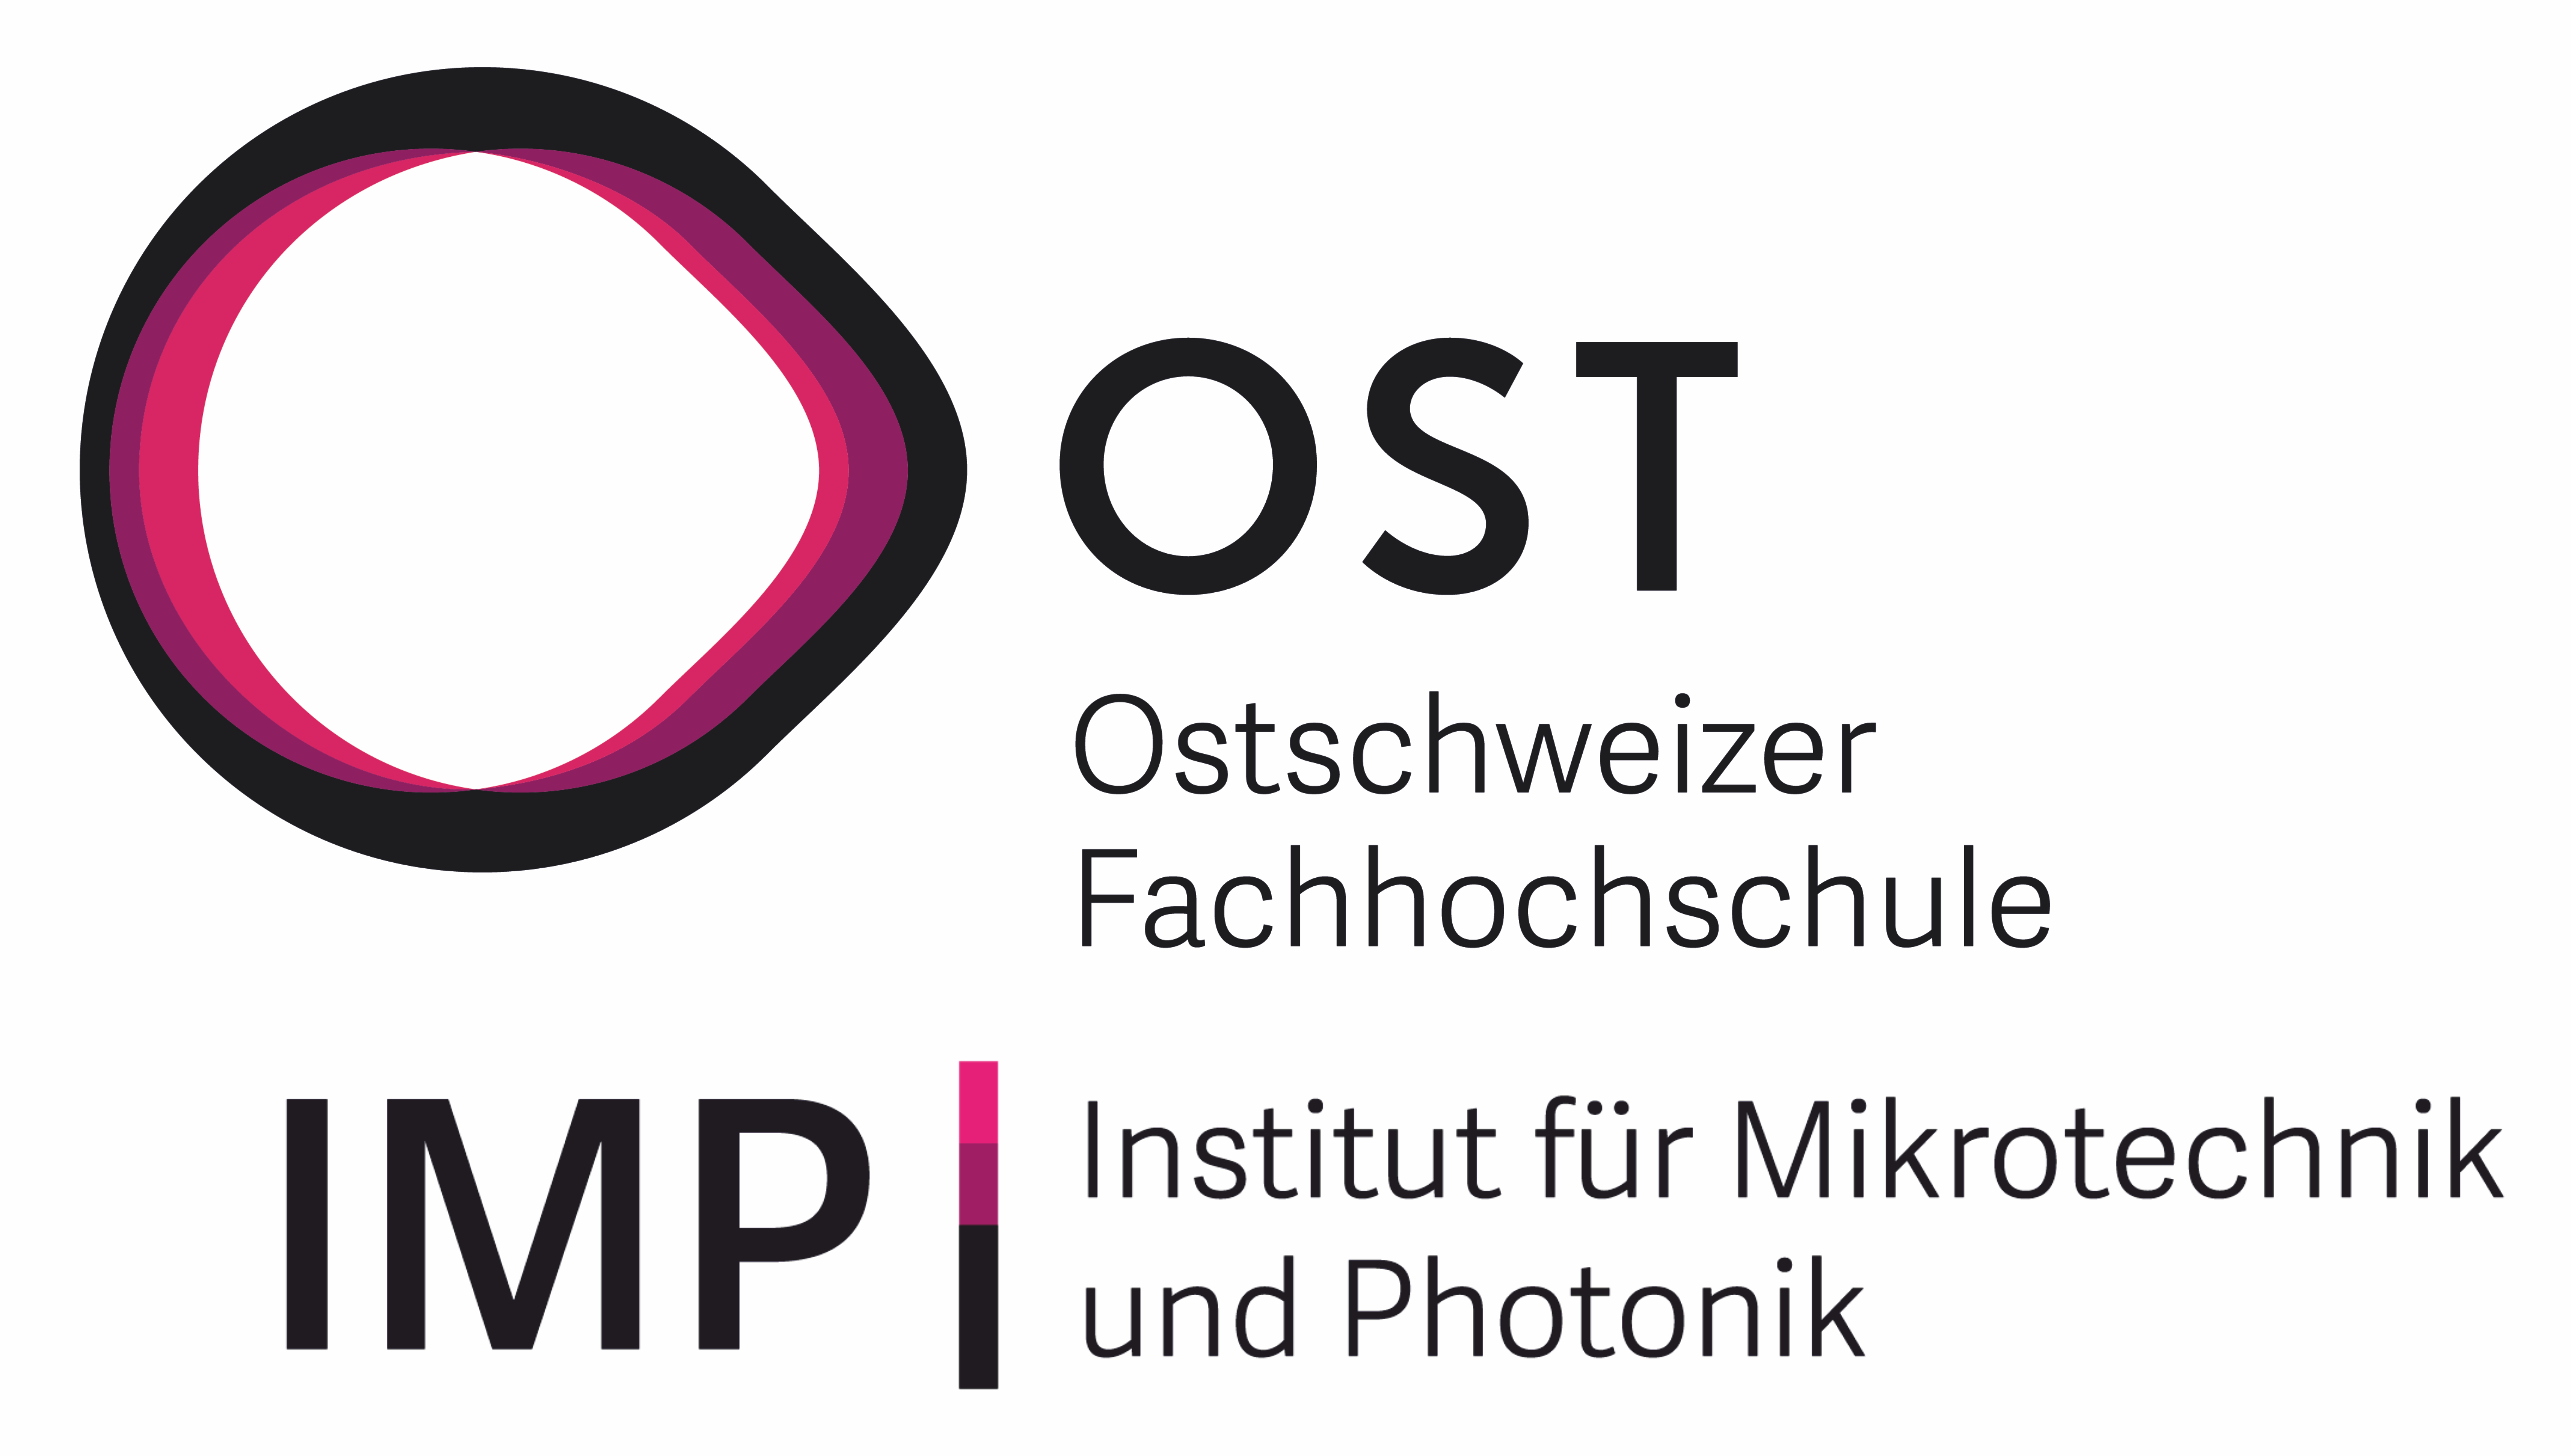 OST – Ostschweizer Fachhochschule, Institut für Mikrotechnik und Photonik